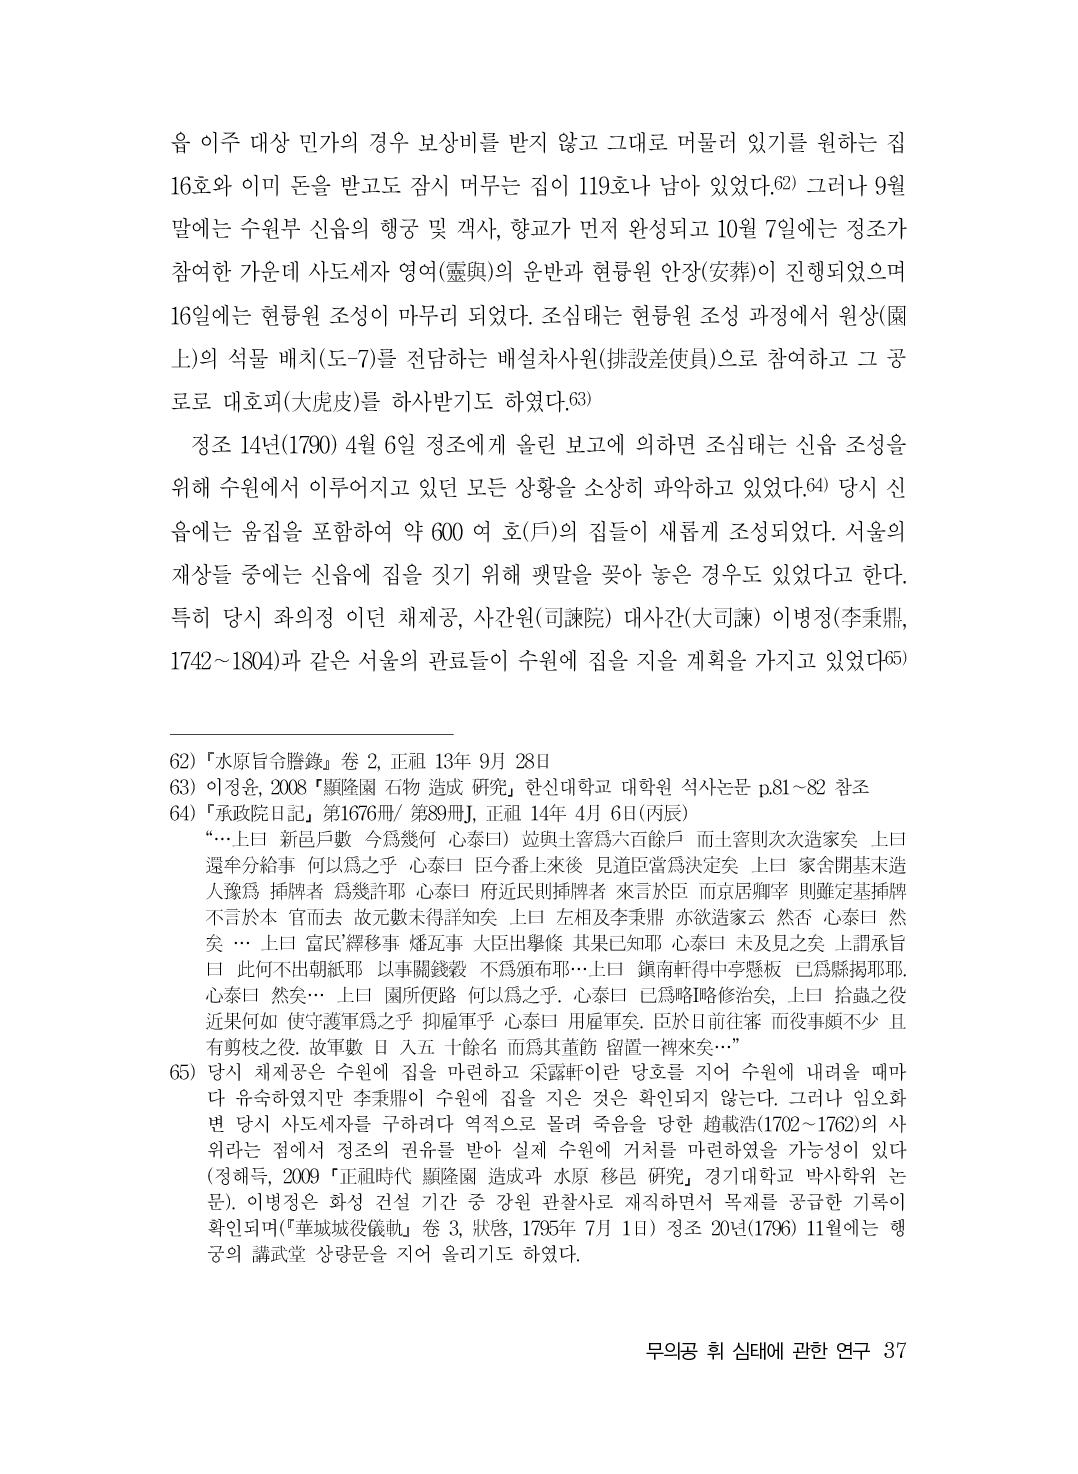 (전체) 송산종보(27호)(최종)_38.jpg